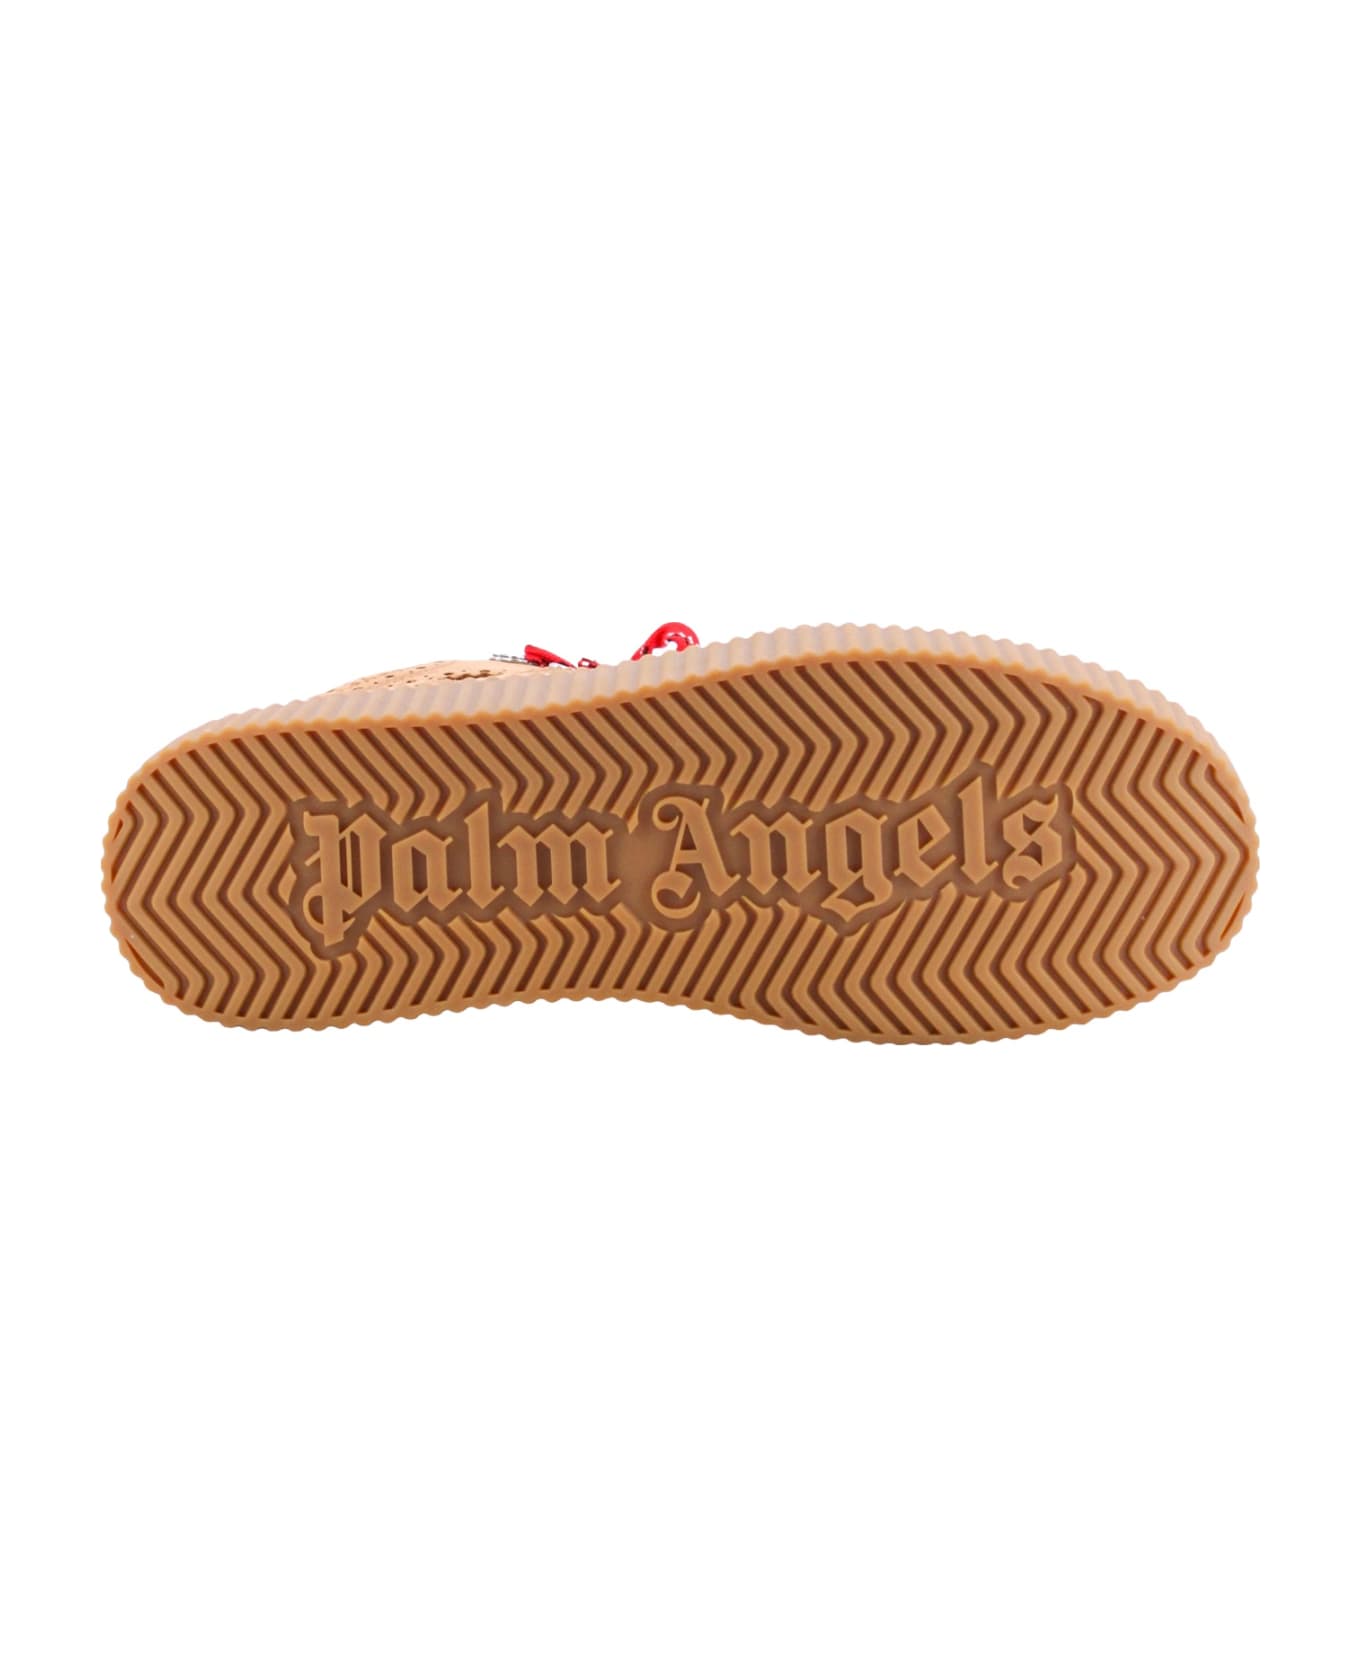 Palm Angels Hiking Boots - Beige ブーツ